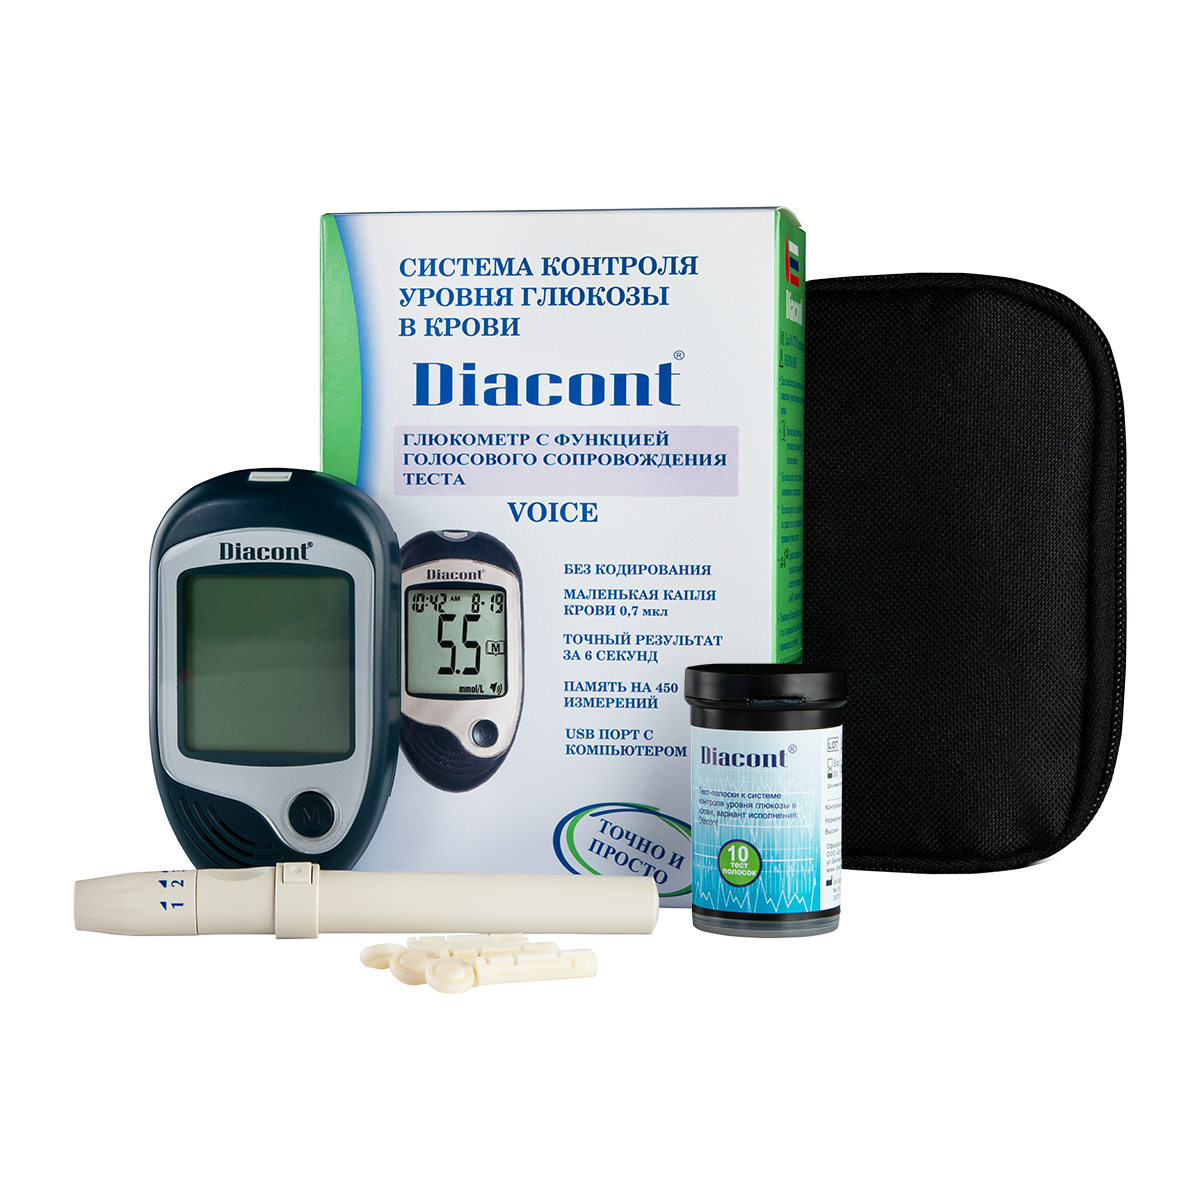 Система контроля уровня глюкозы в крови марки Diacont (Voice) с функцией голосового сопровождения текста